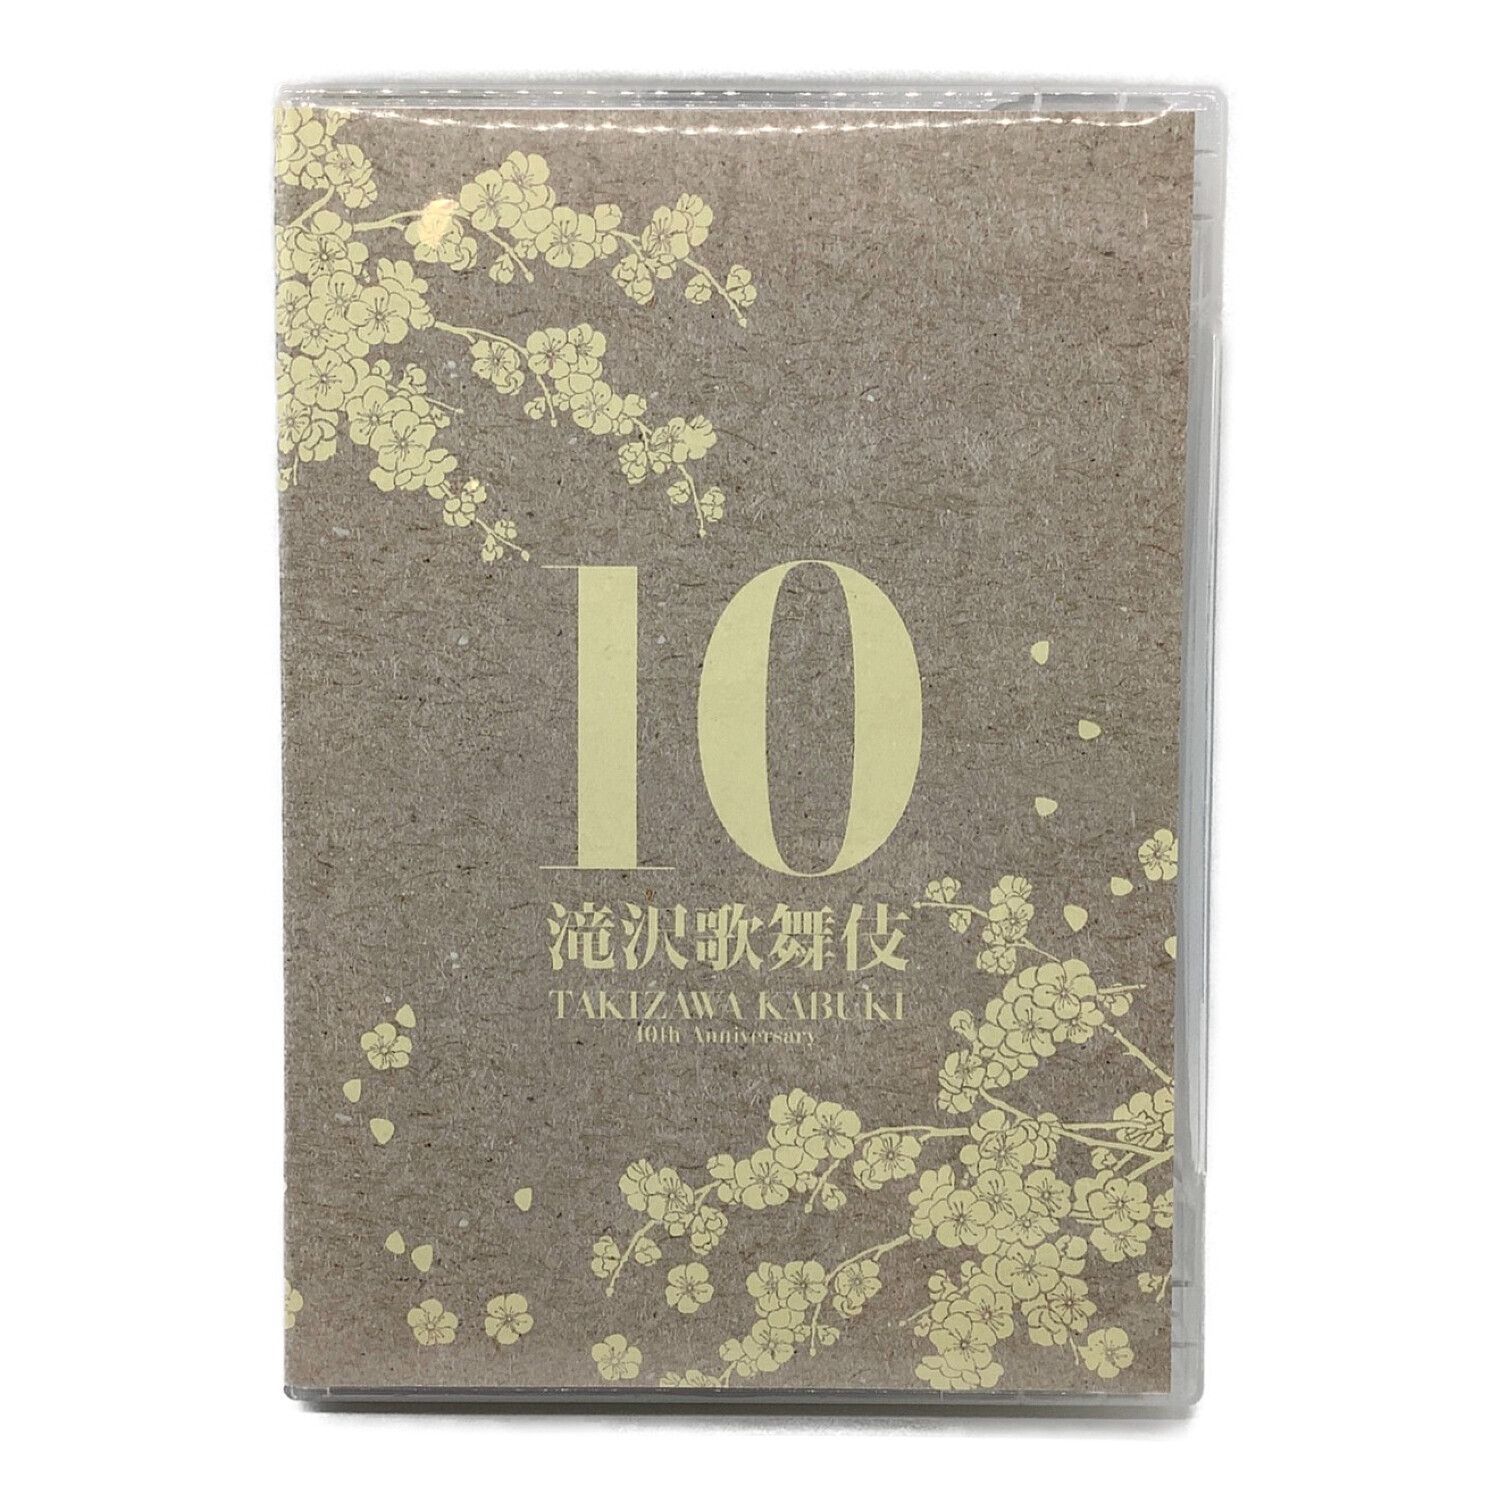 可愛すぎるフェミニンデザイン♪ 滝沢歌舞伎10th Anniversary 日本盤〈3枚組〉シンガポール盤